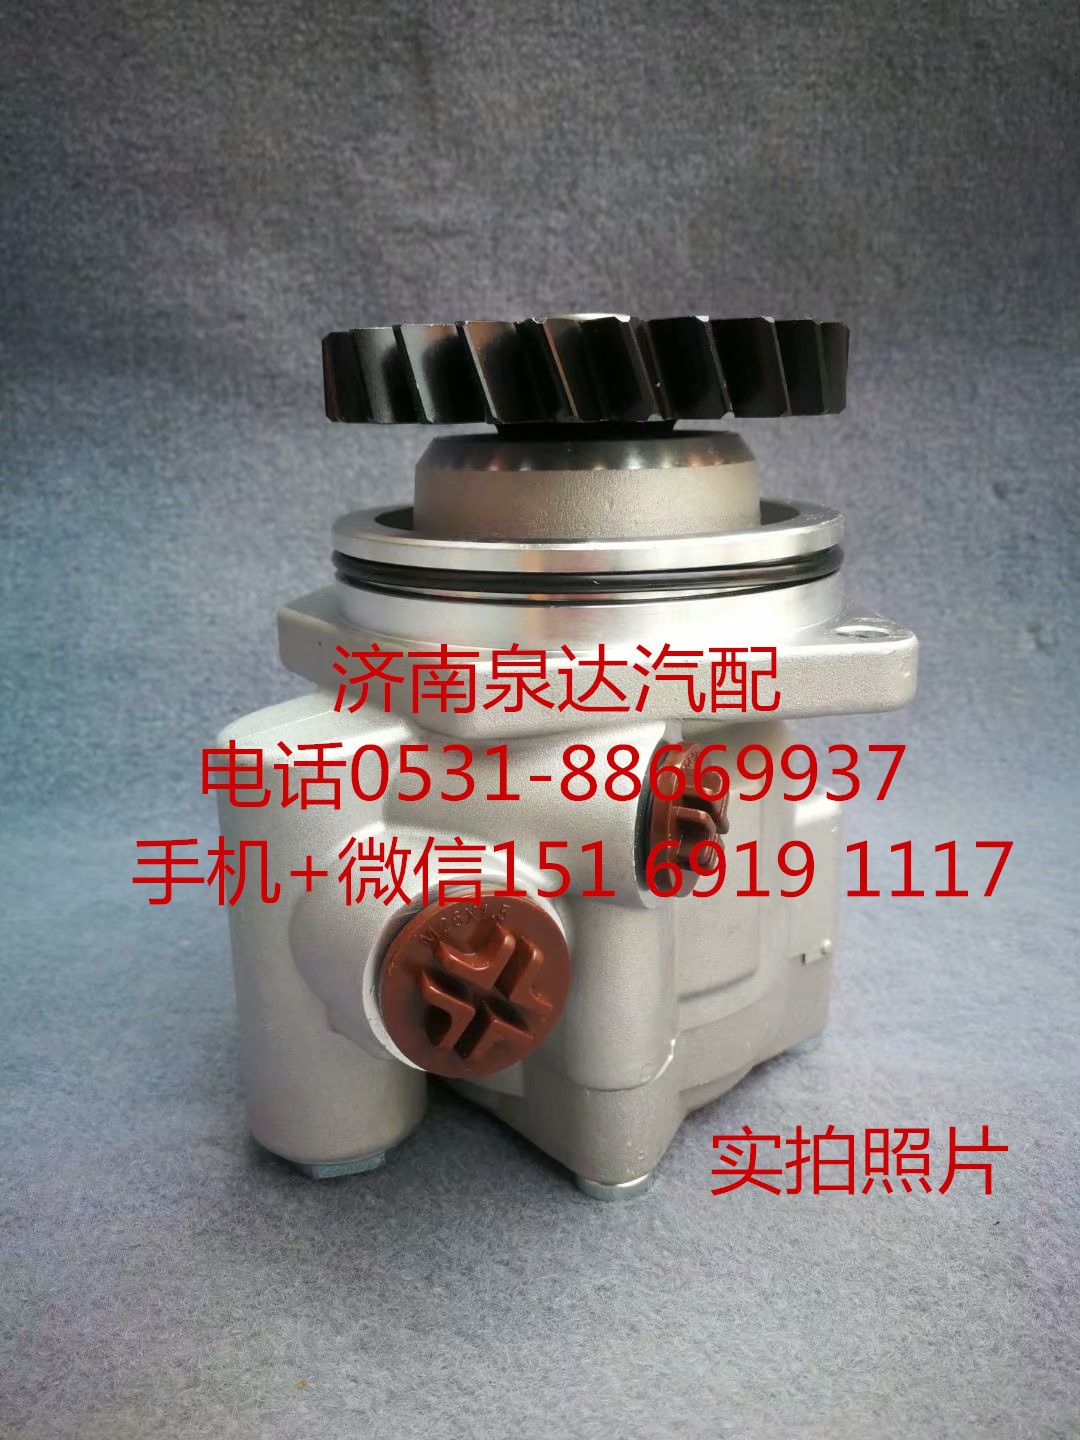 3407020-D815A,转向助力泵,济南泉达汽配有限公司